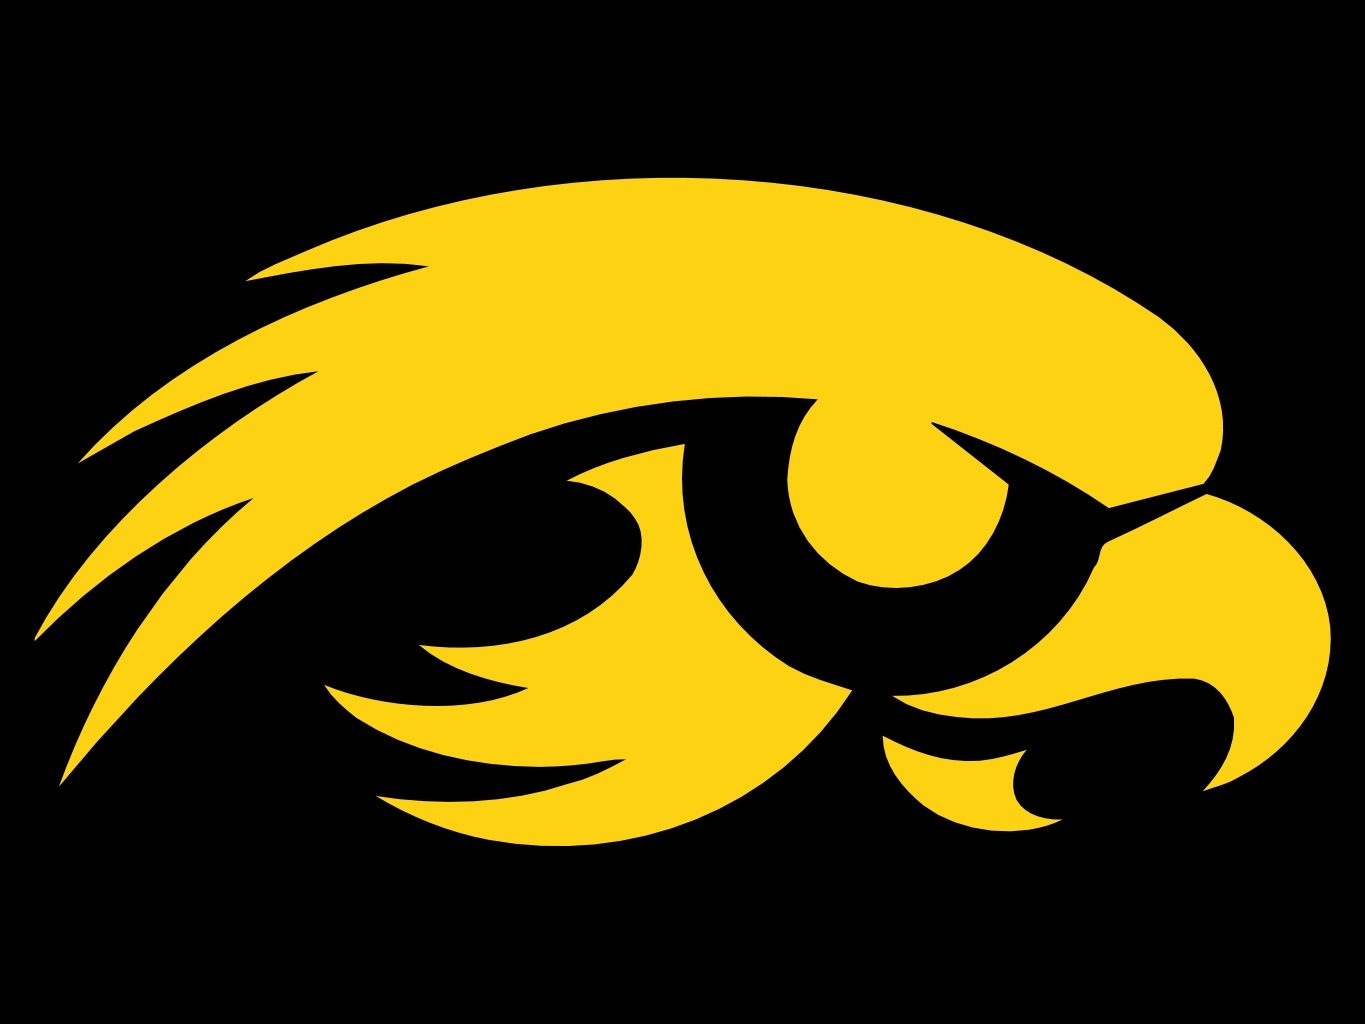 Iowa Hawkeyes Logo photo - 1